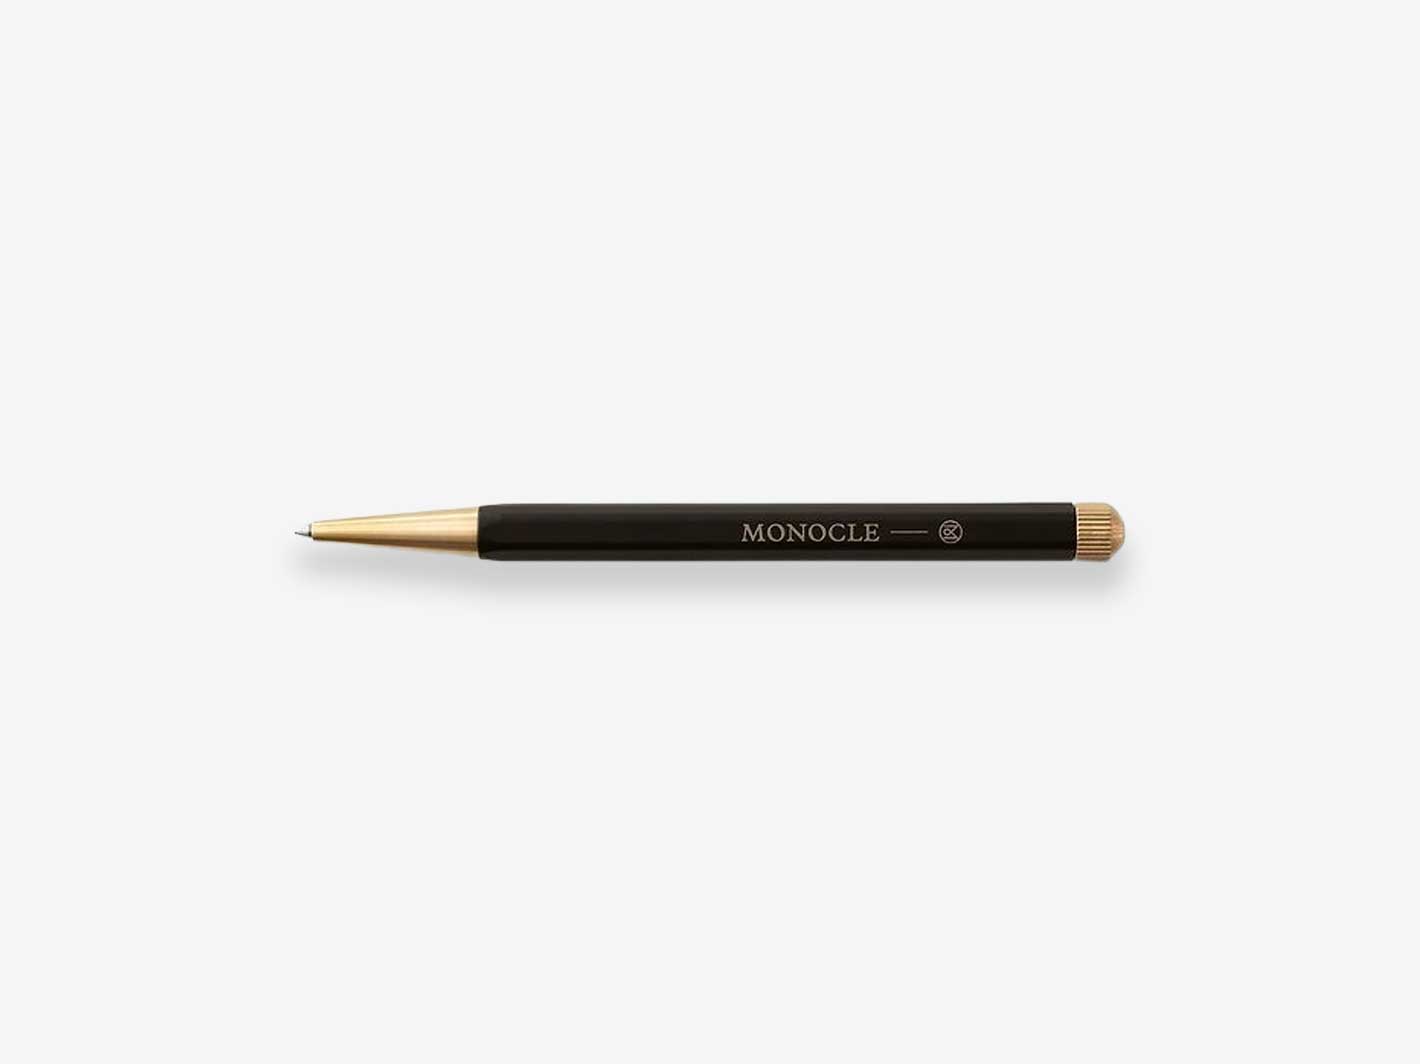 Drehgriffel Pen Black